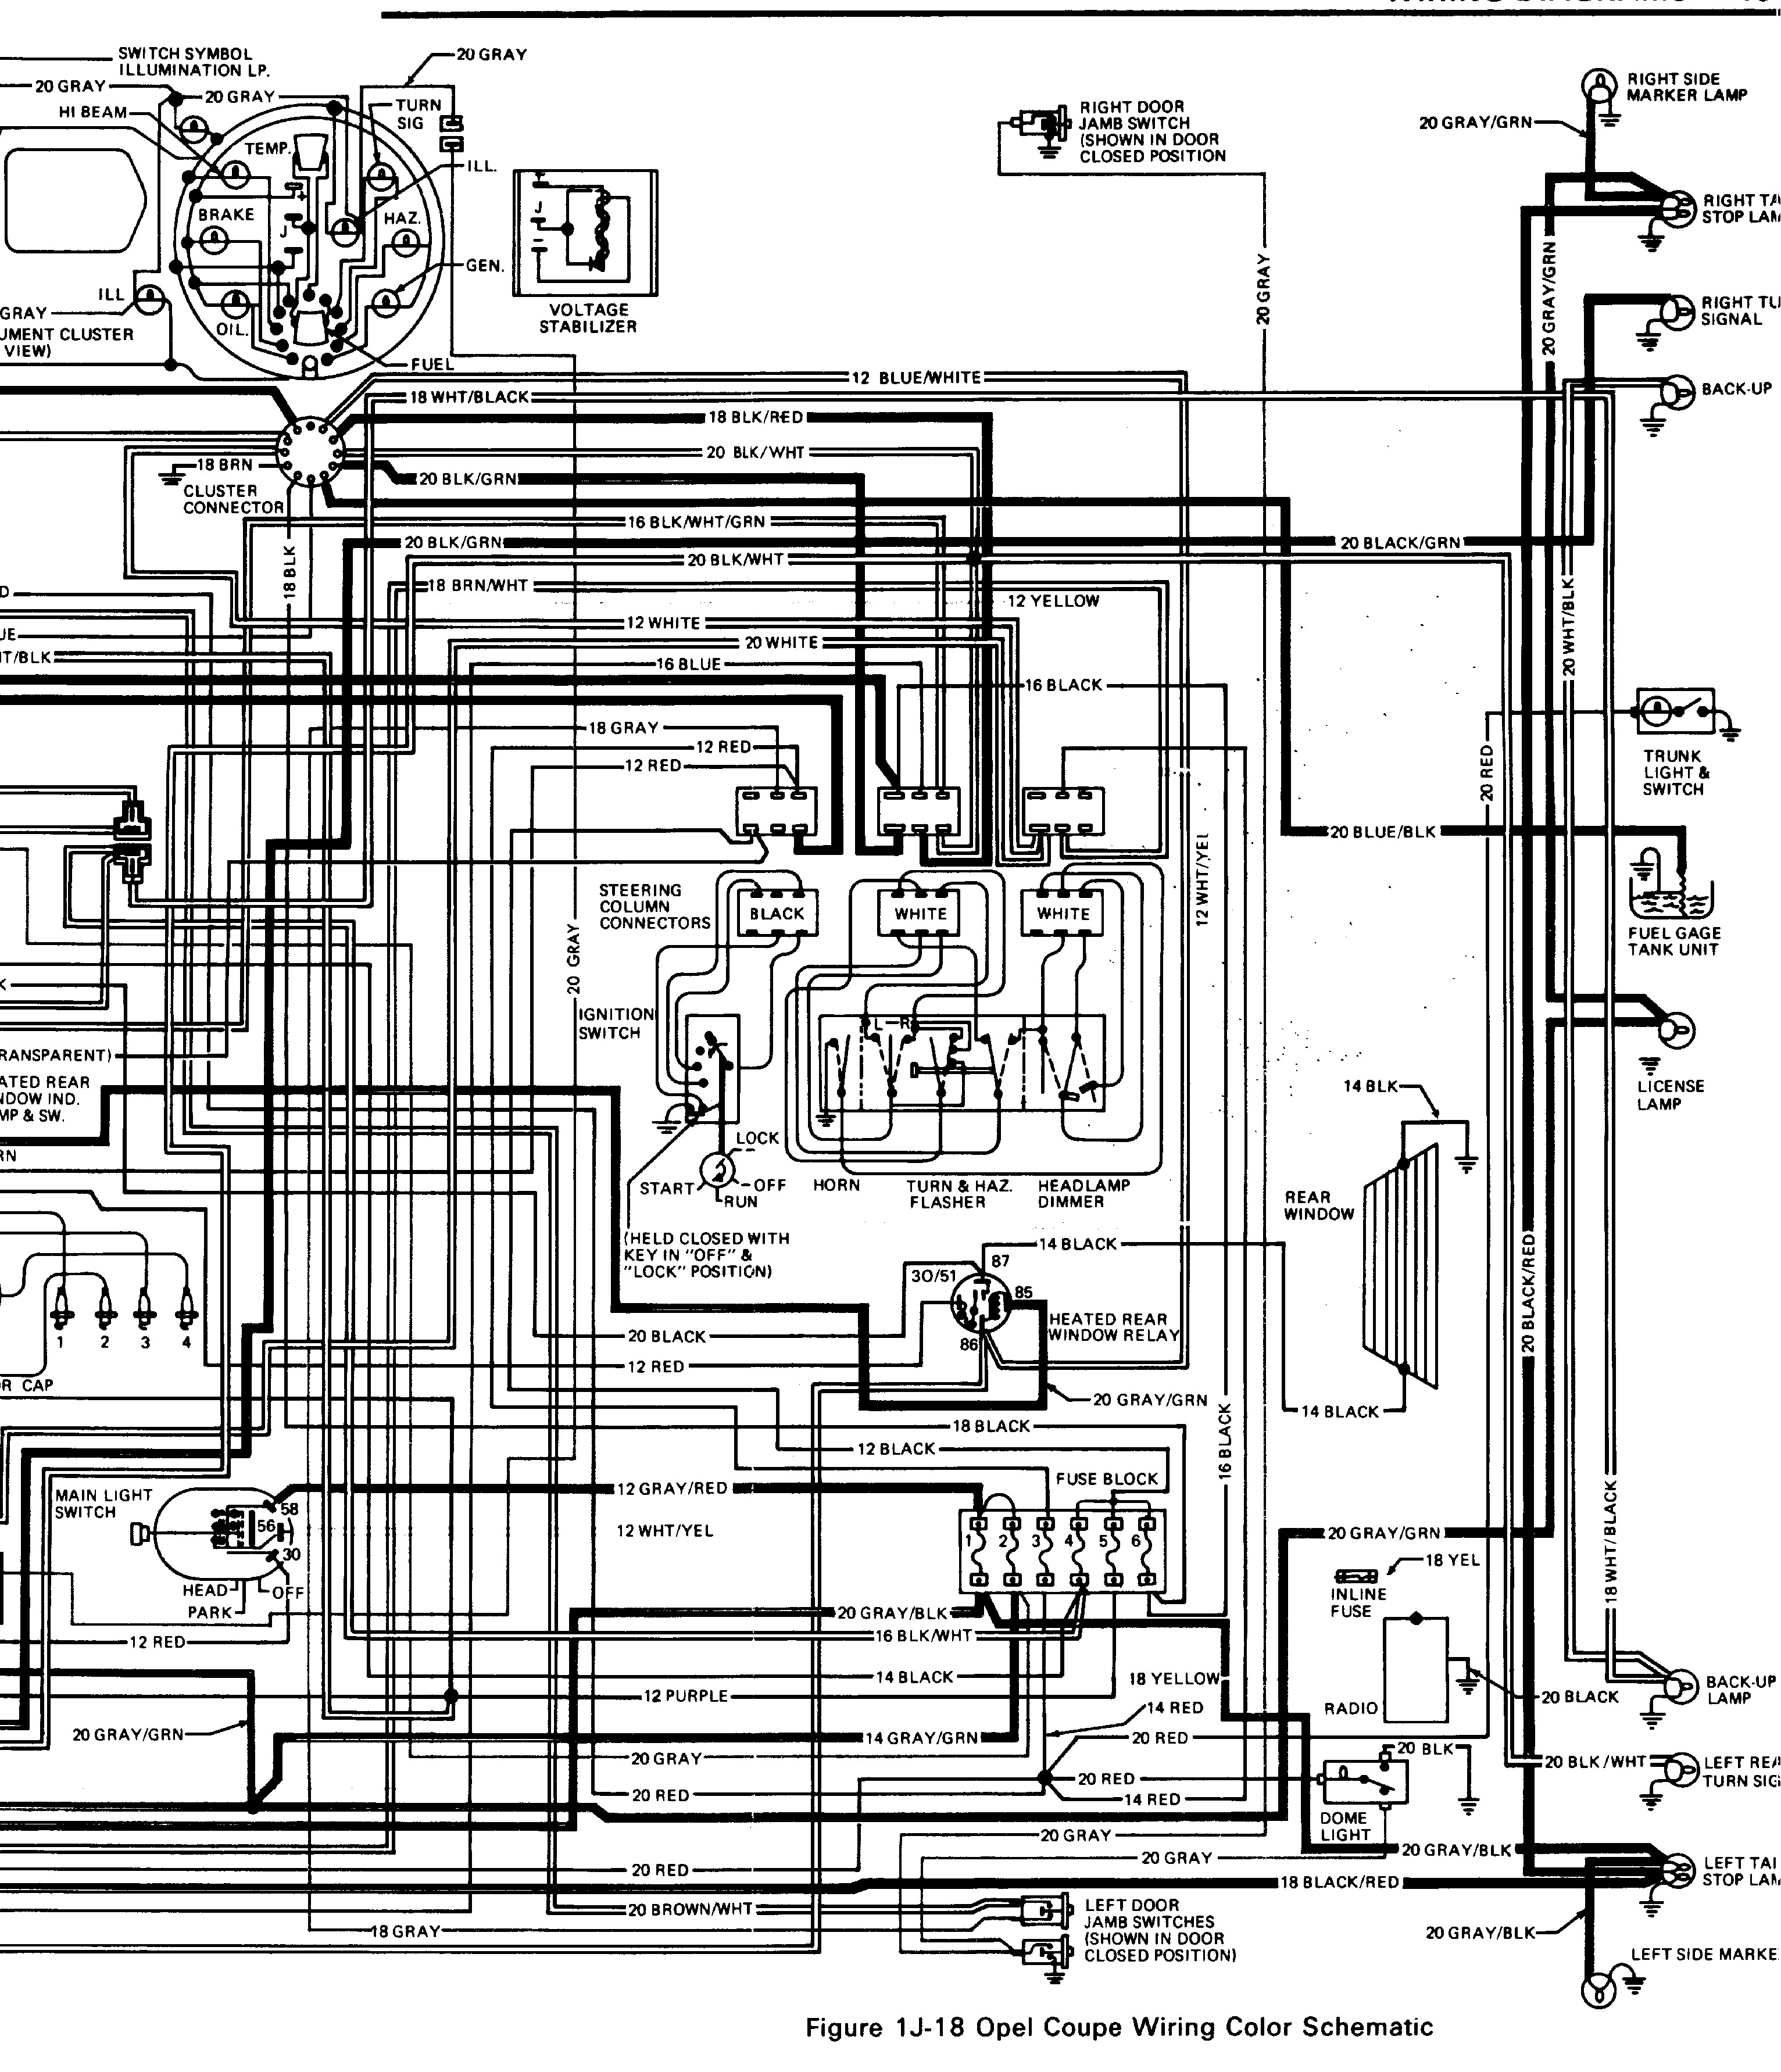 Vivaro Van Wiring Diagram - Wiring Diagram vauxhall cavalier wiring diagram 